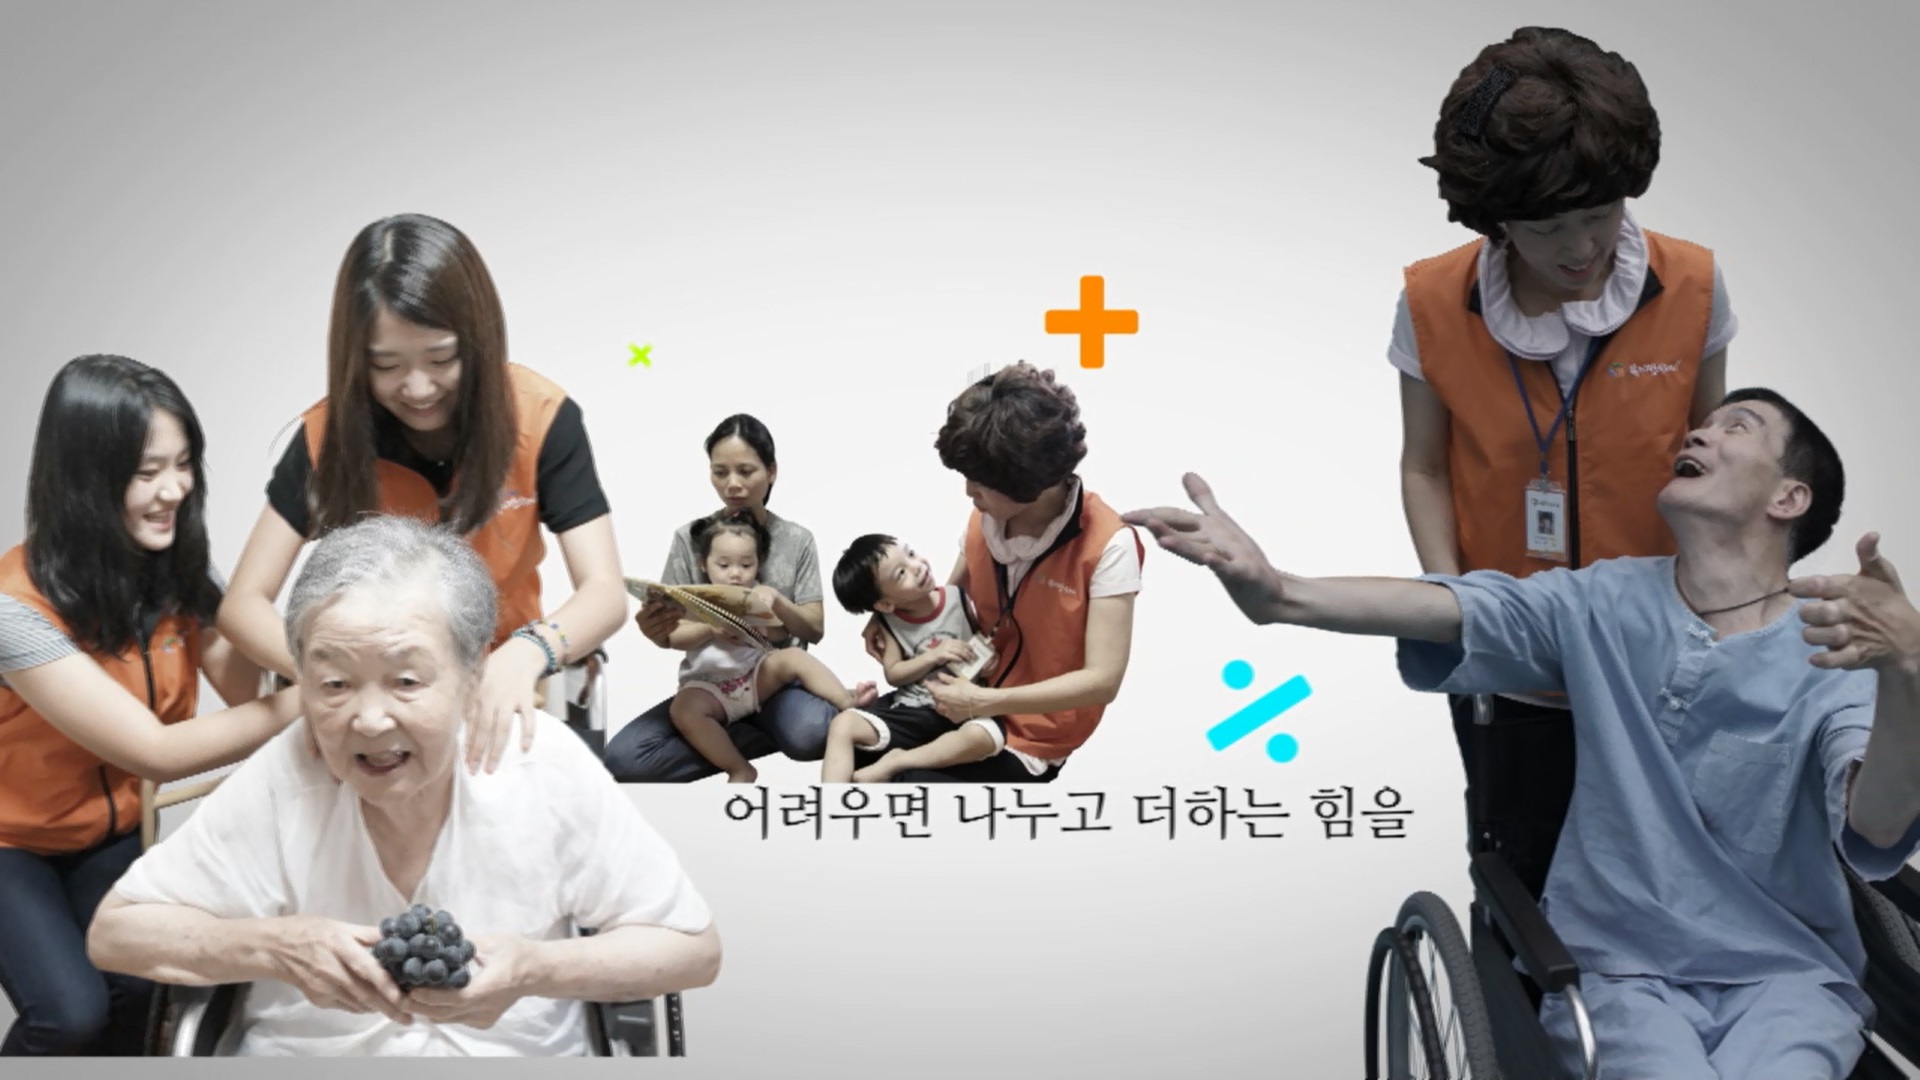 2013년 복지만두레 홍보영상 2탄